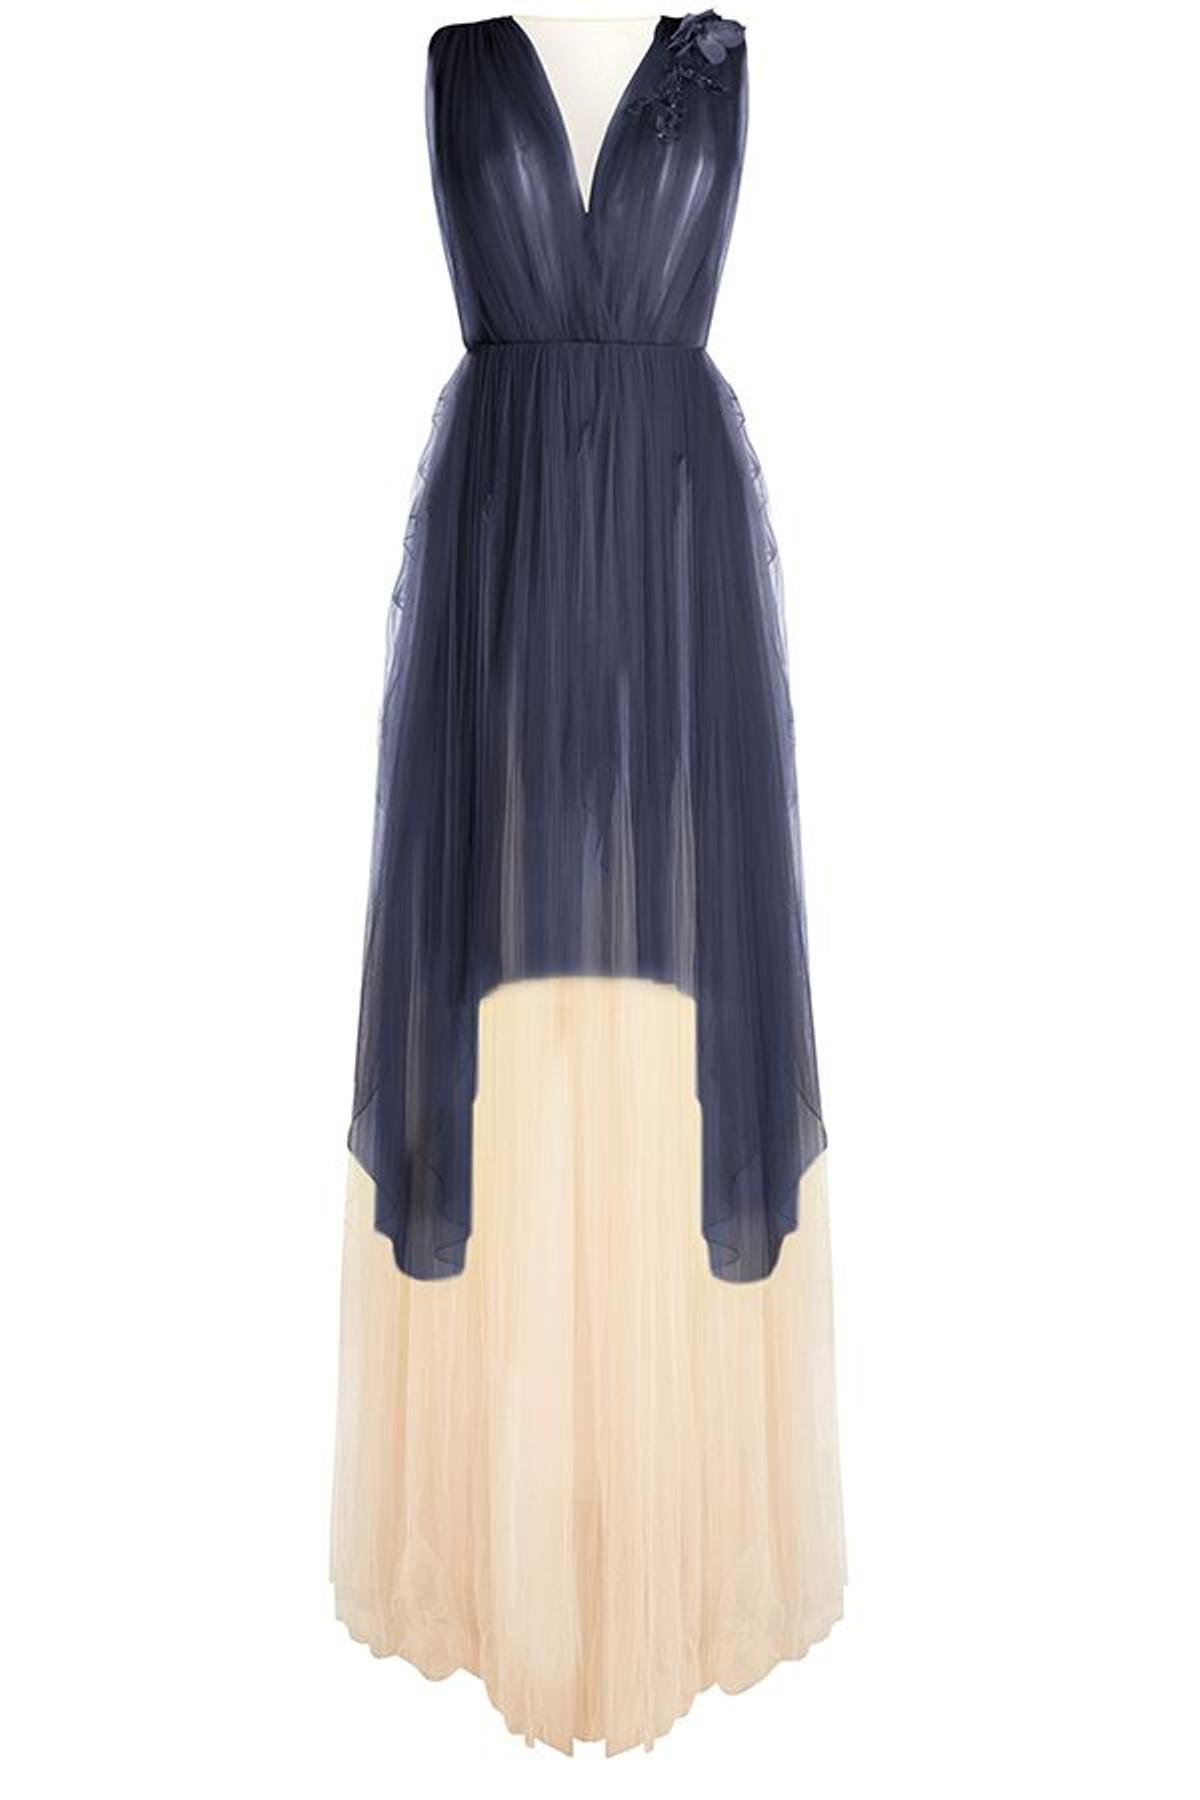 Vestido de tul de Delpozo para su colección cápsula para Stylebop.com